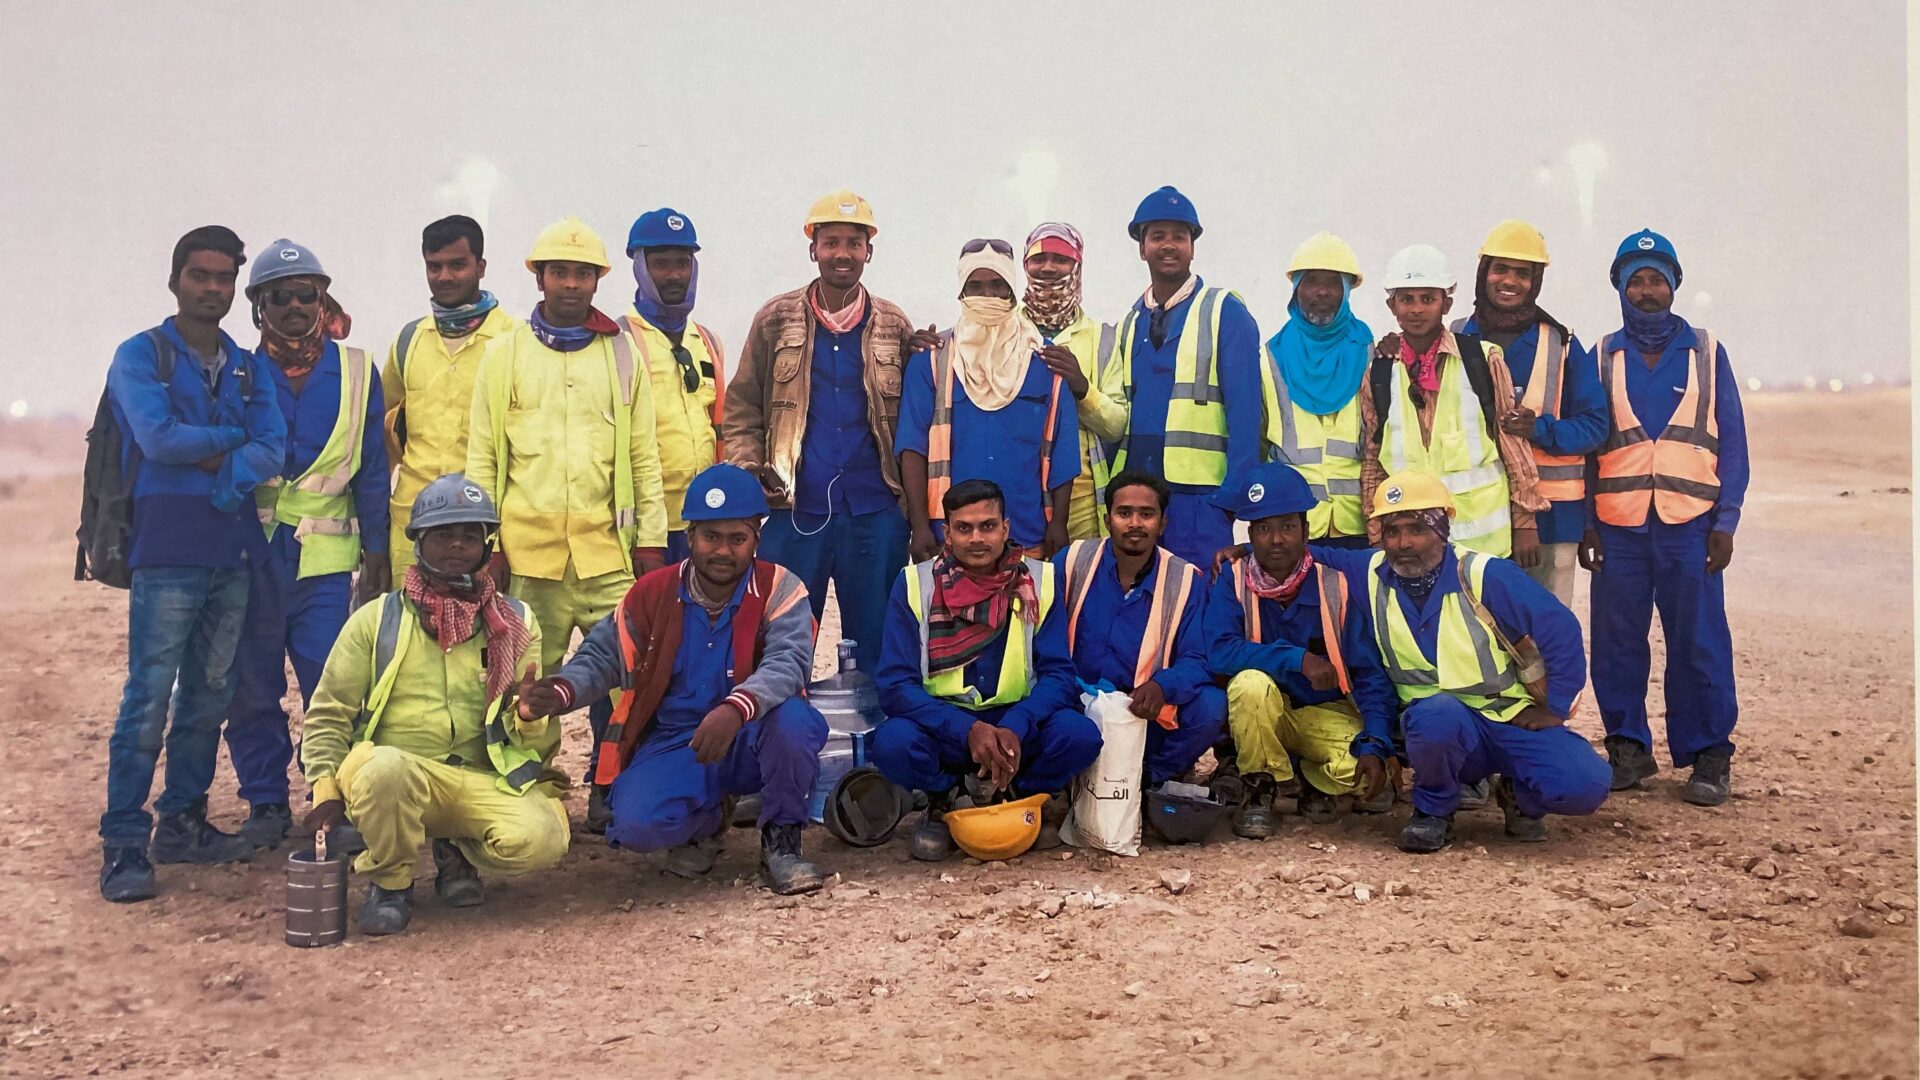  Beitragsbild “Forgotten Team” – Arbeiter*innen in Katar